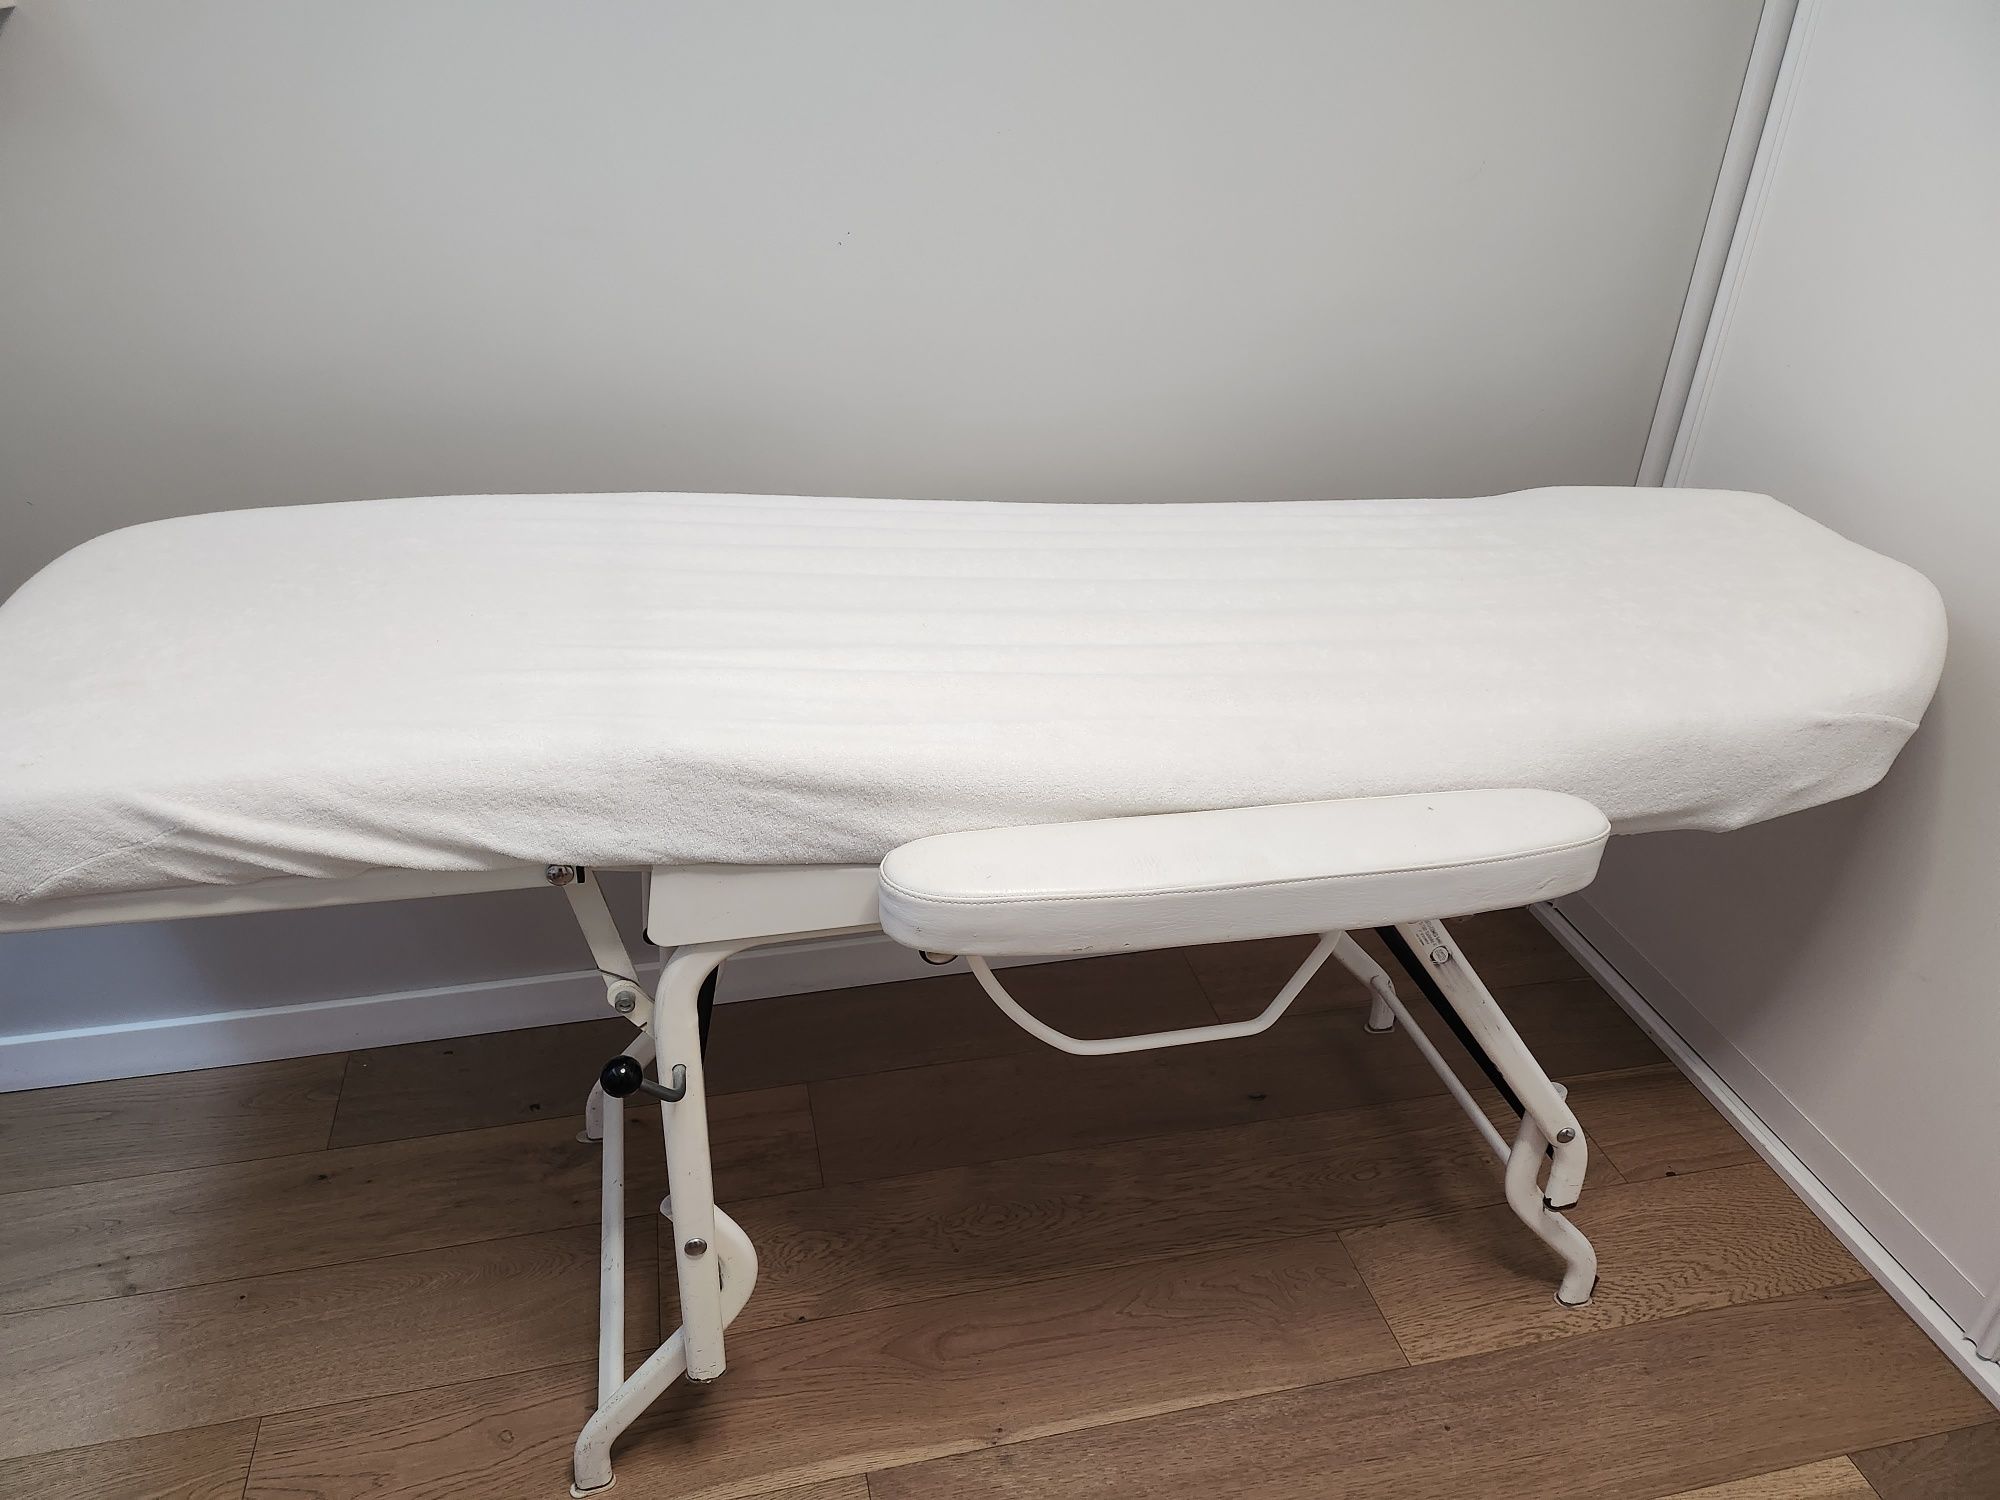 Fotel kosmetyczny łóżko podologiczne